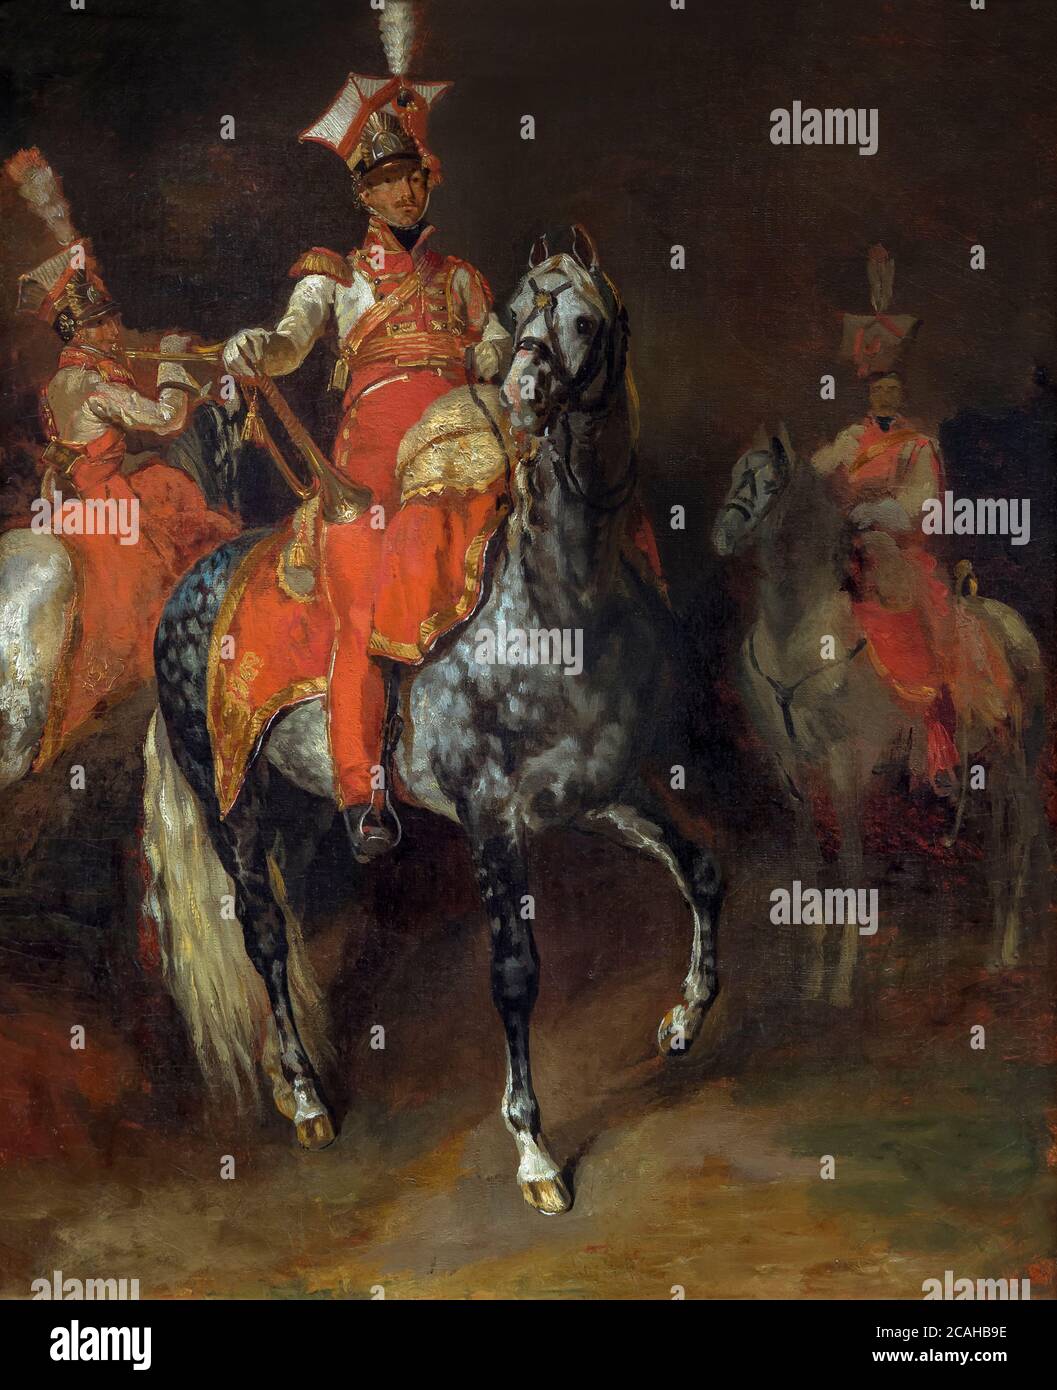 Les trompettistes monté la garde impériale de Napoléon, Theodore Gericault, 1813-1814, National Gallery of Art, Washington DC, USA, Amérique du Nord Banque D'Images